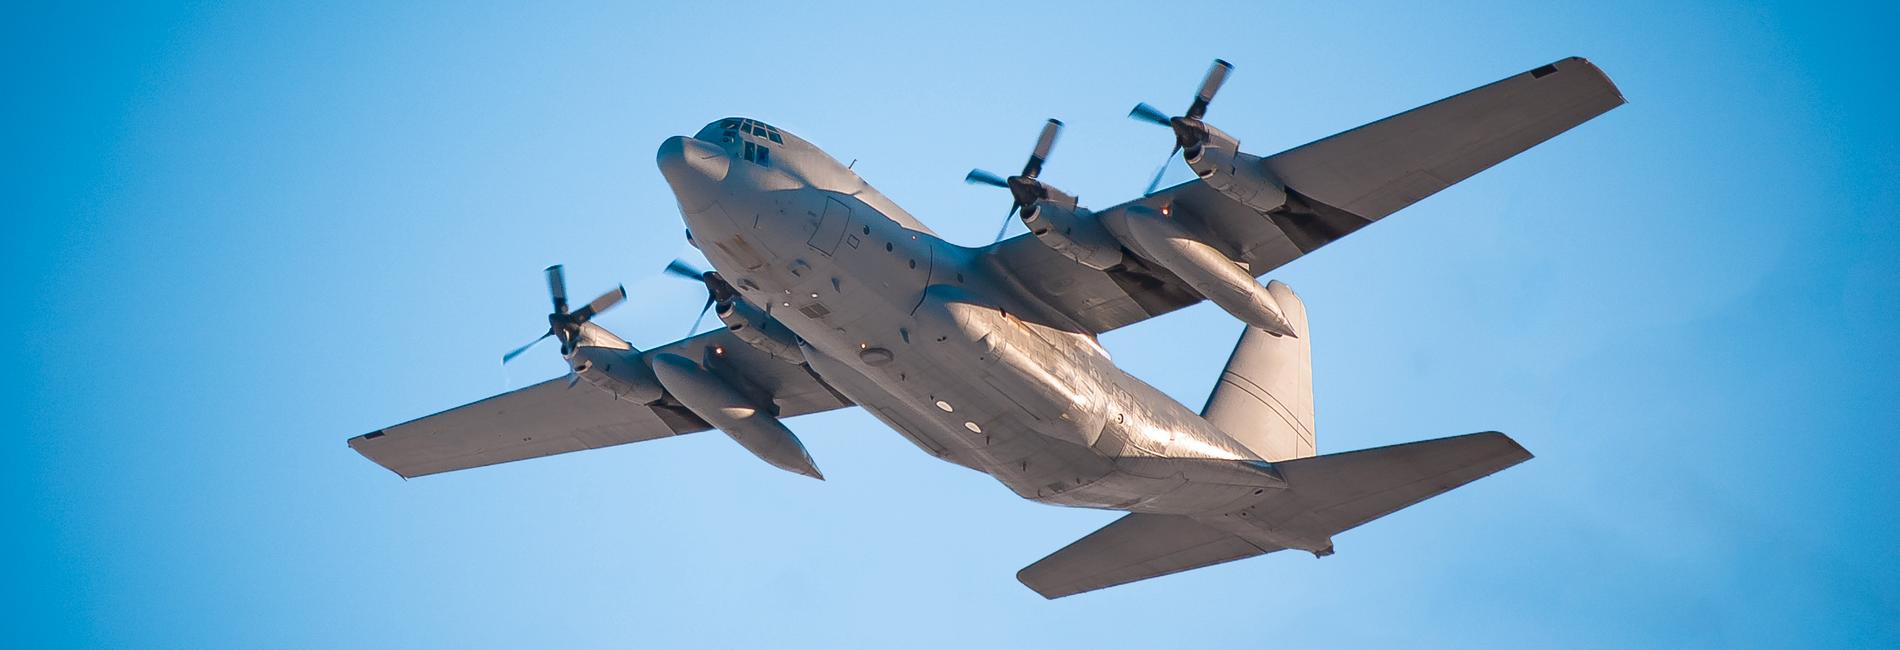 Ett Hercules transportflygplan Lockhead C-130 (dock inte det det plan som kraschade).